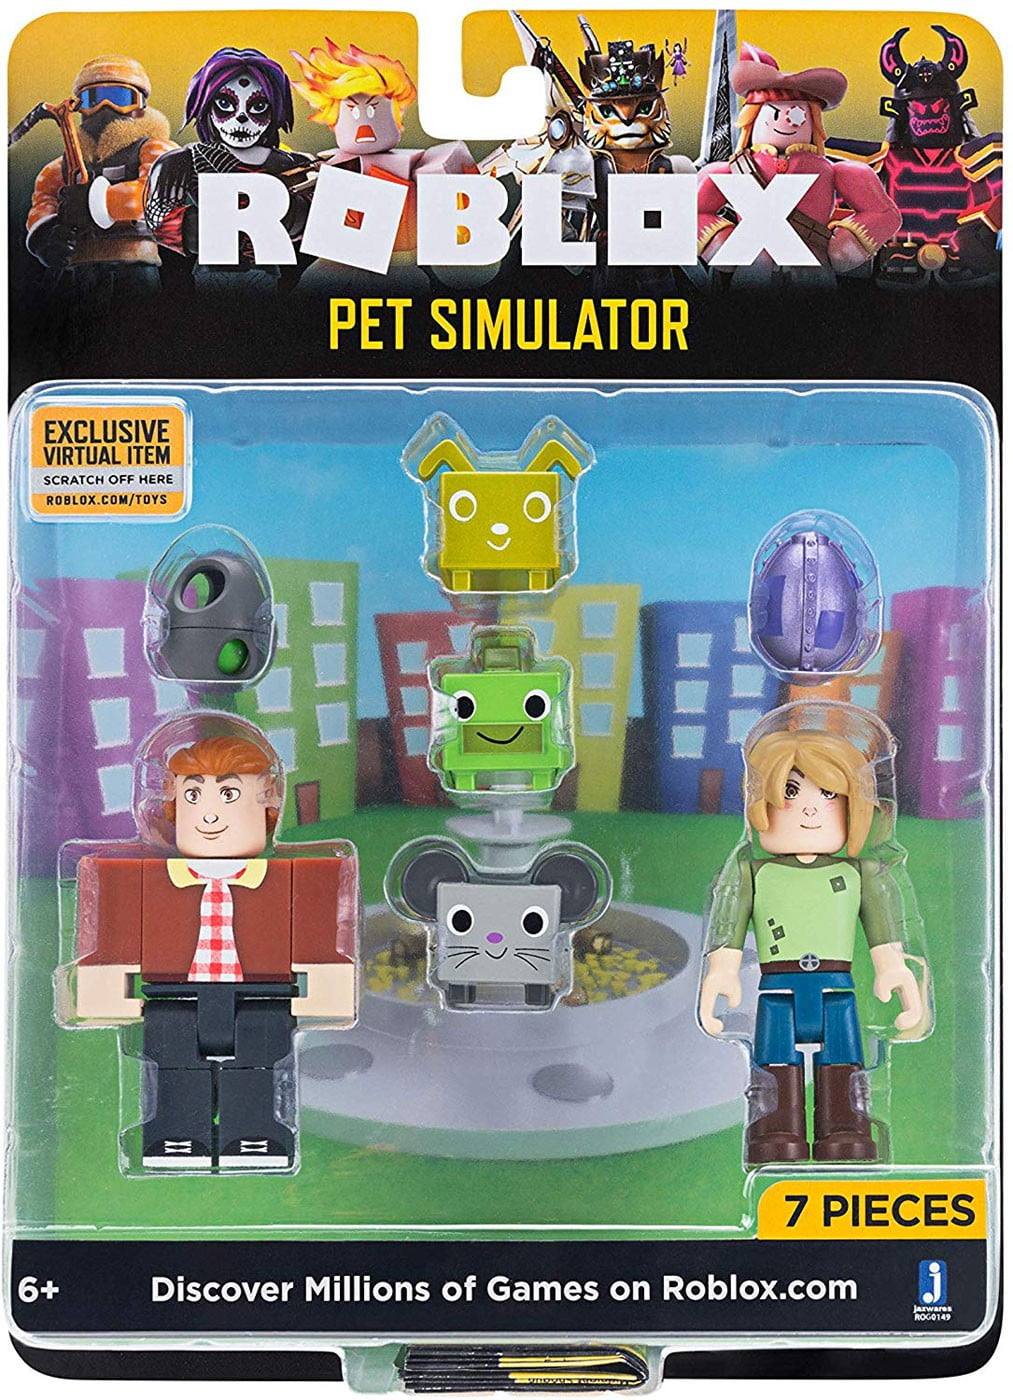 Roblox Celebrity Pet Simulator Game Pack Walmart Com Walmart Com